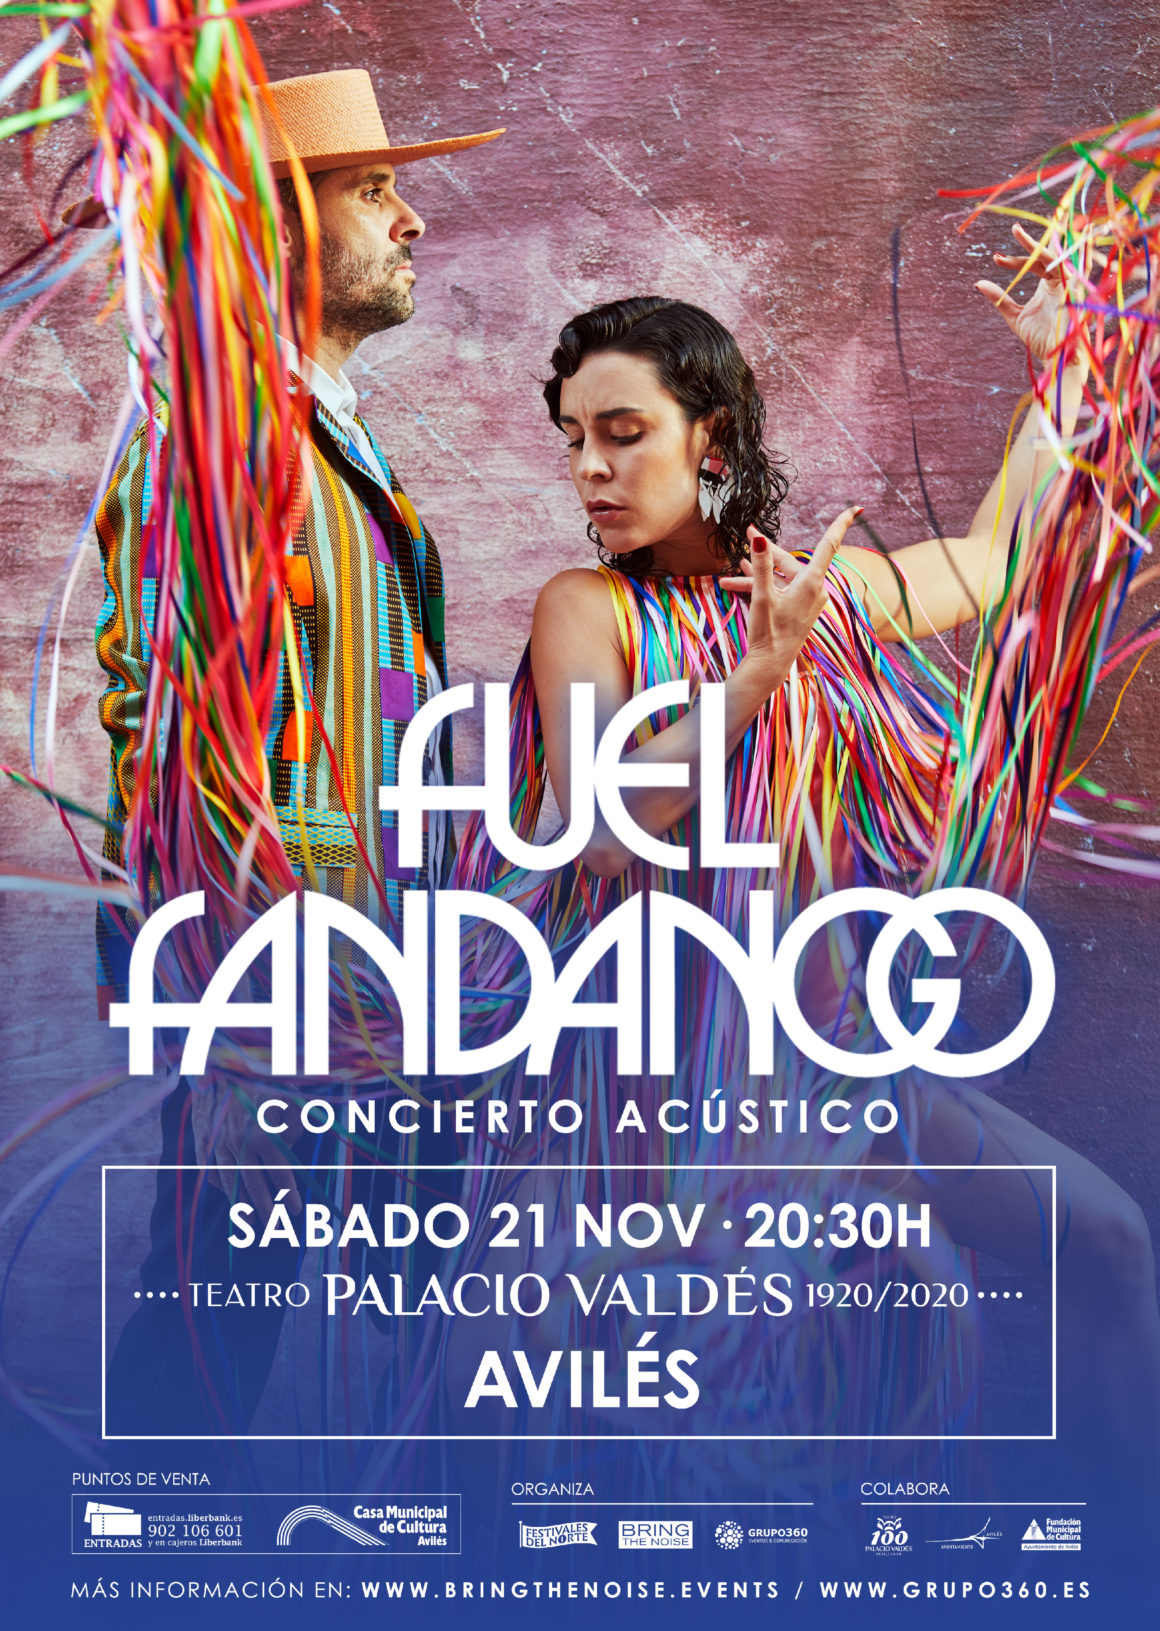 Fuel Fandango actuará en Avilés en el Teatro Palacio Valdés